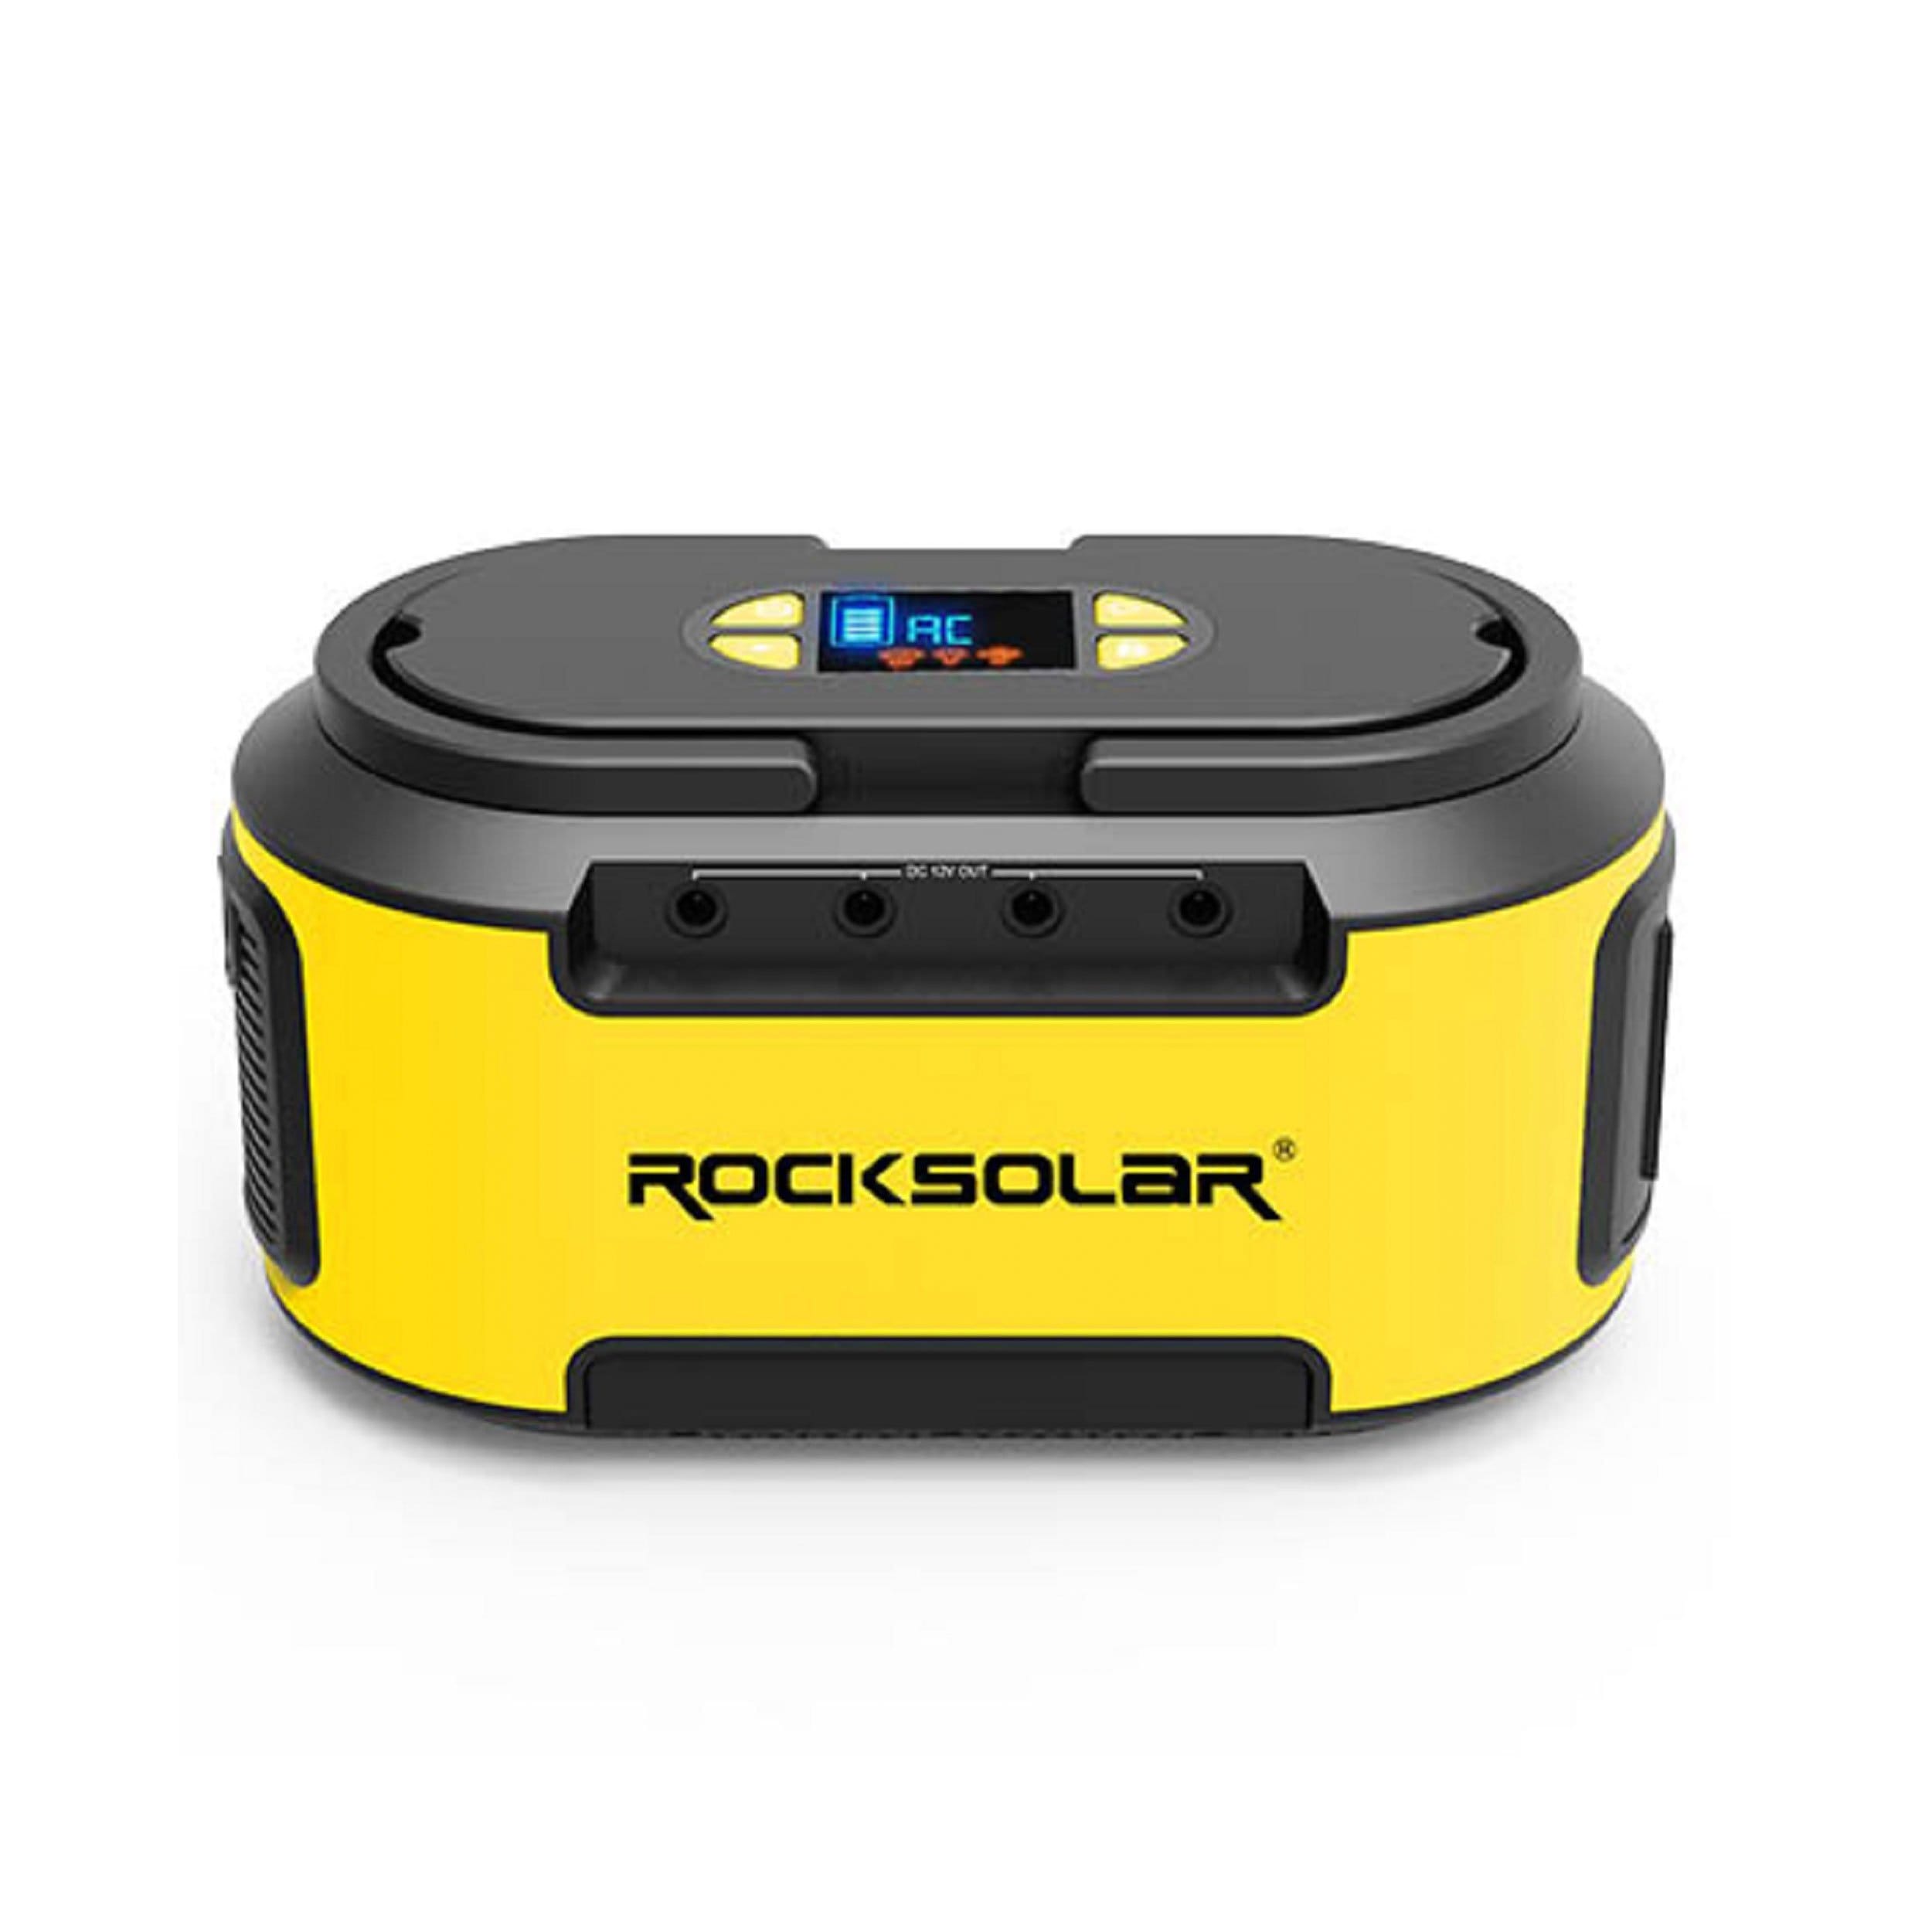 ROCKSOLAR Camping & Outdoor : Solar/Portable Power Rocksolar Portable Power Station 200W